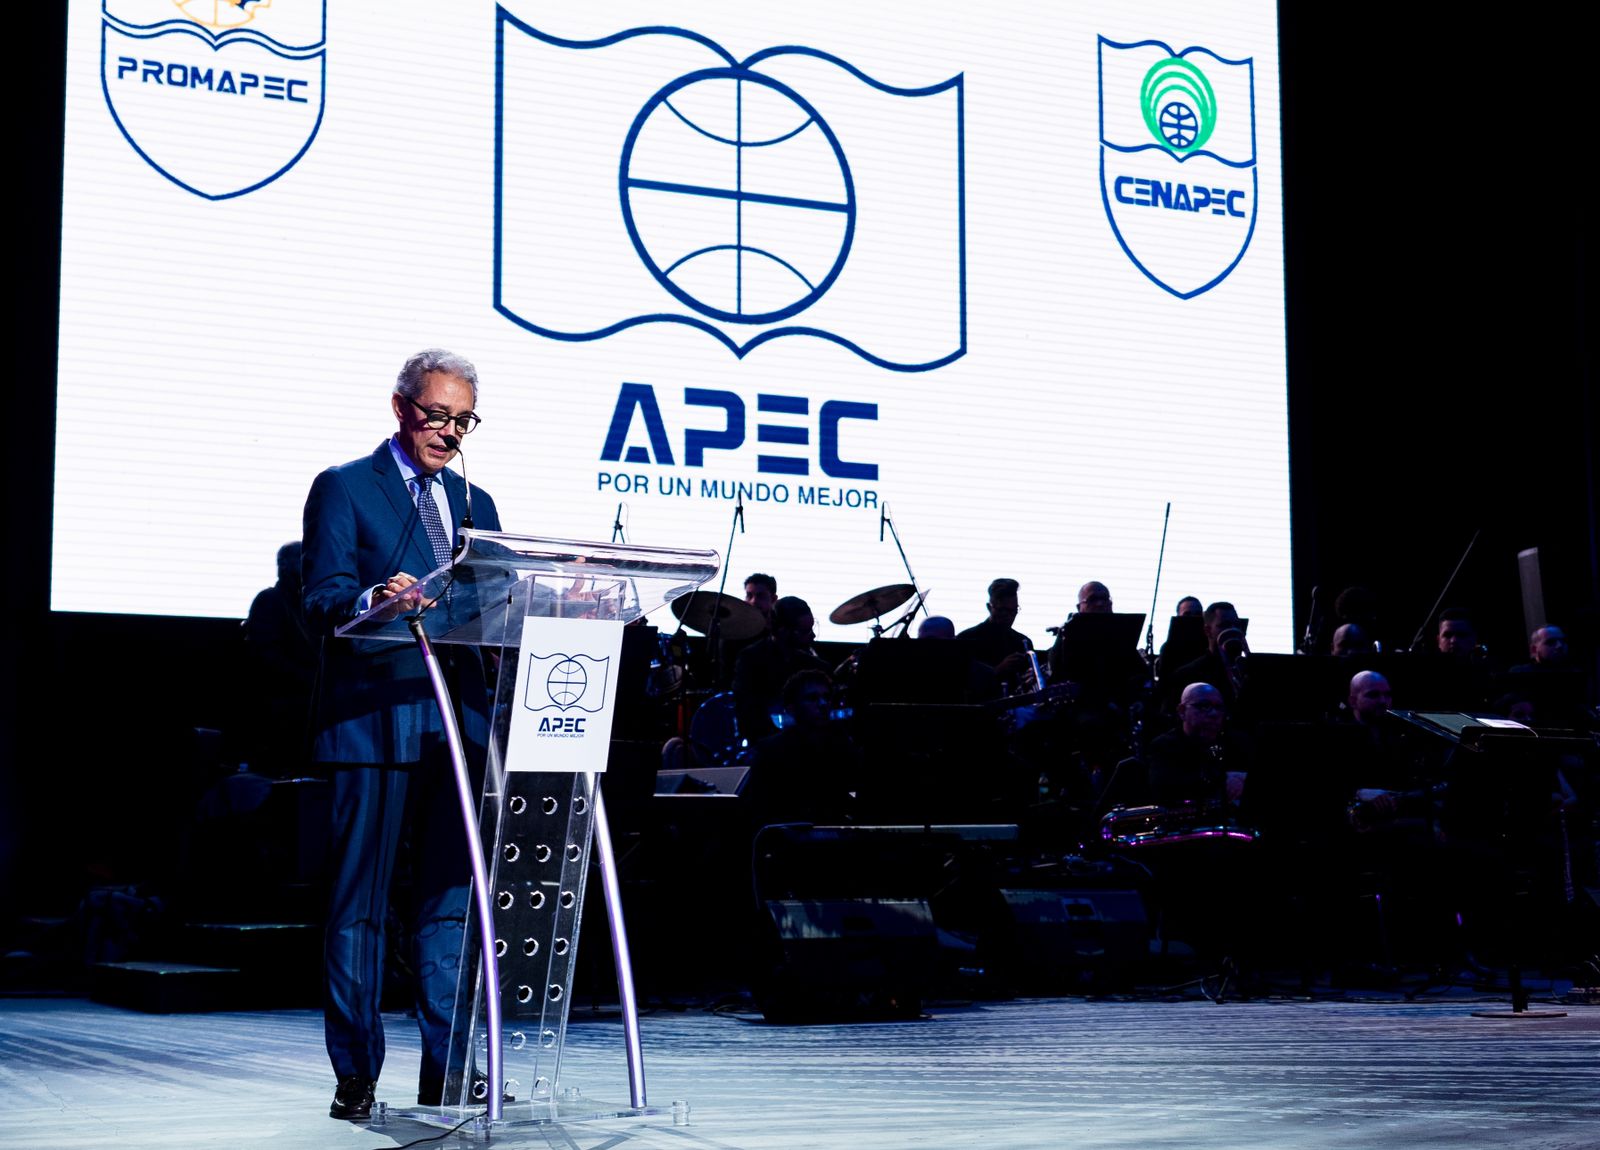 Grupo APEC celebró en grande aniversario de PROMAPEC Y CENAPEC en el Teatro Nacional